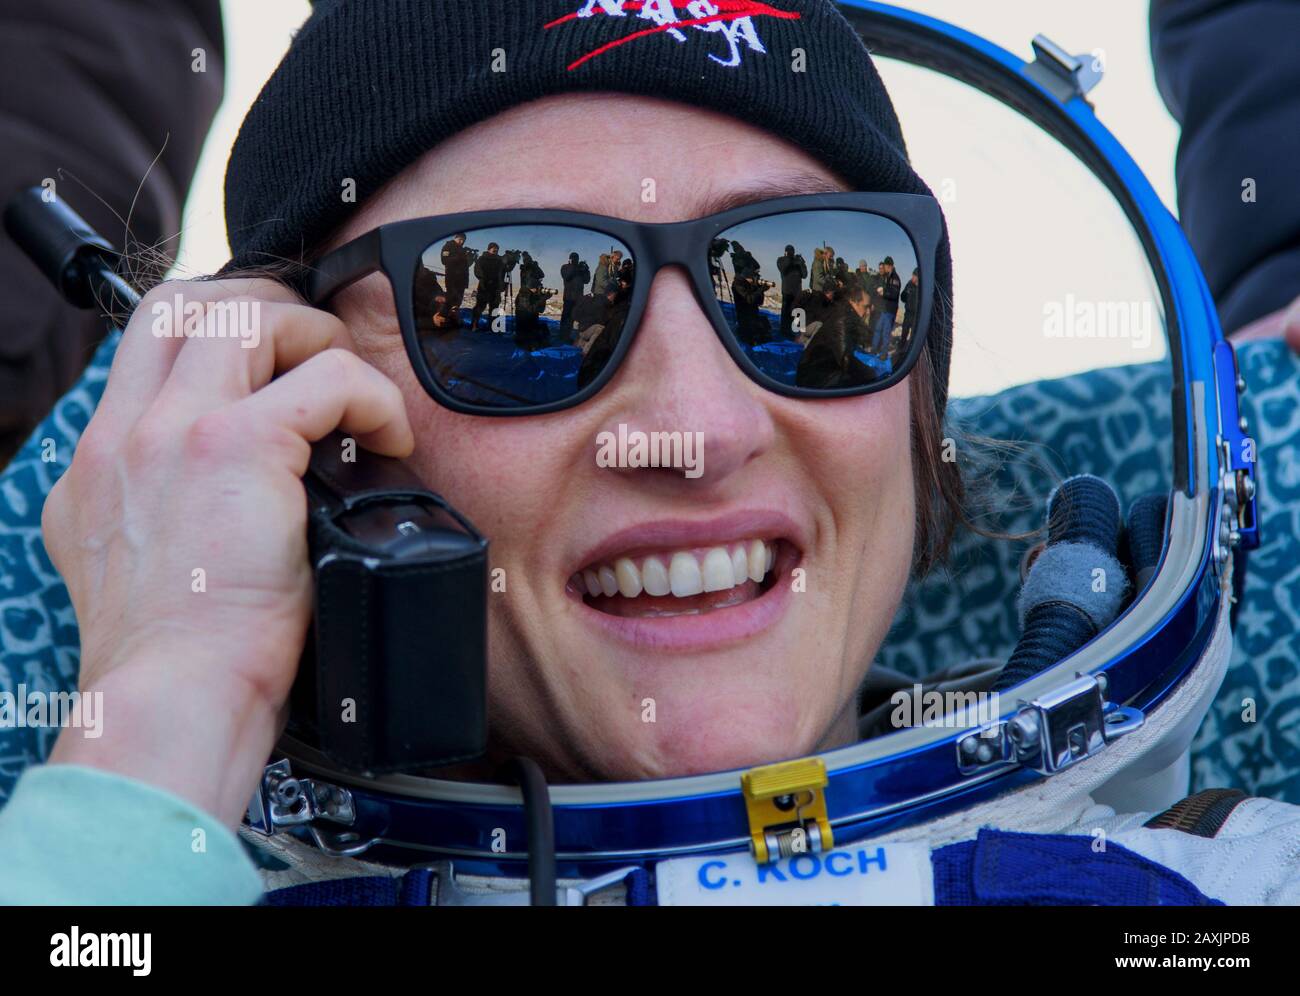 ZHEZKAZGAN, KASACHSTAN - 6. Februar 2020 - Die Rekord-Astronautin Christina Koch wird außerhalb des Sojus MS-13-Raumschiffs gesehen, nachdem sie Roskosmos Co Stockfoto